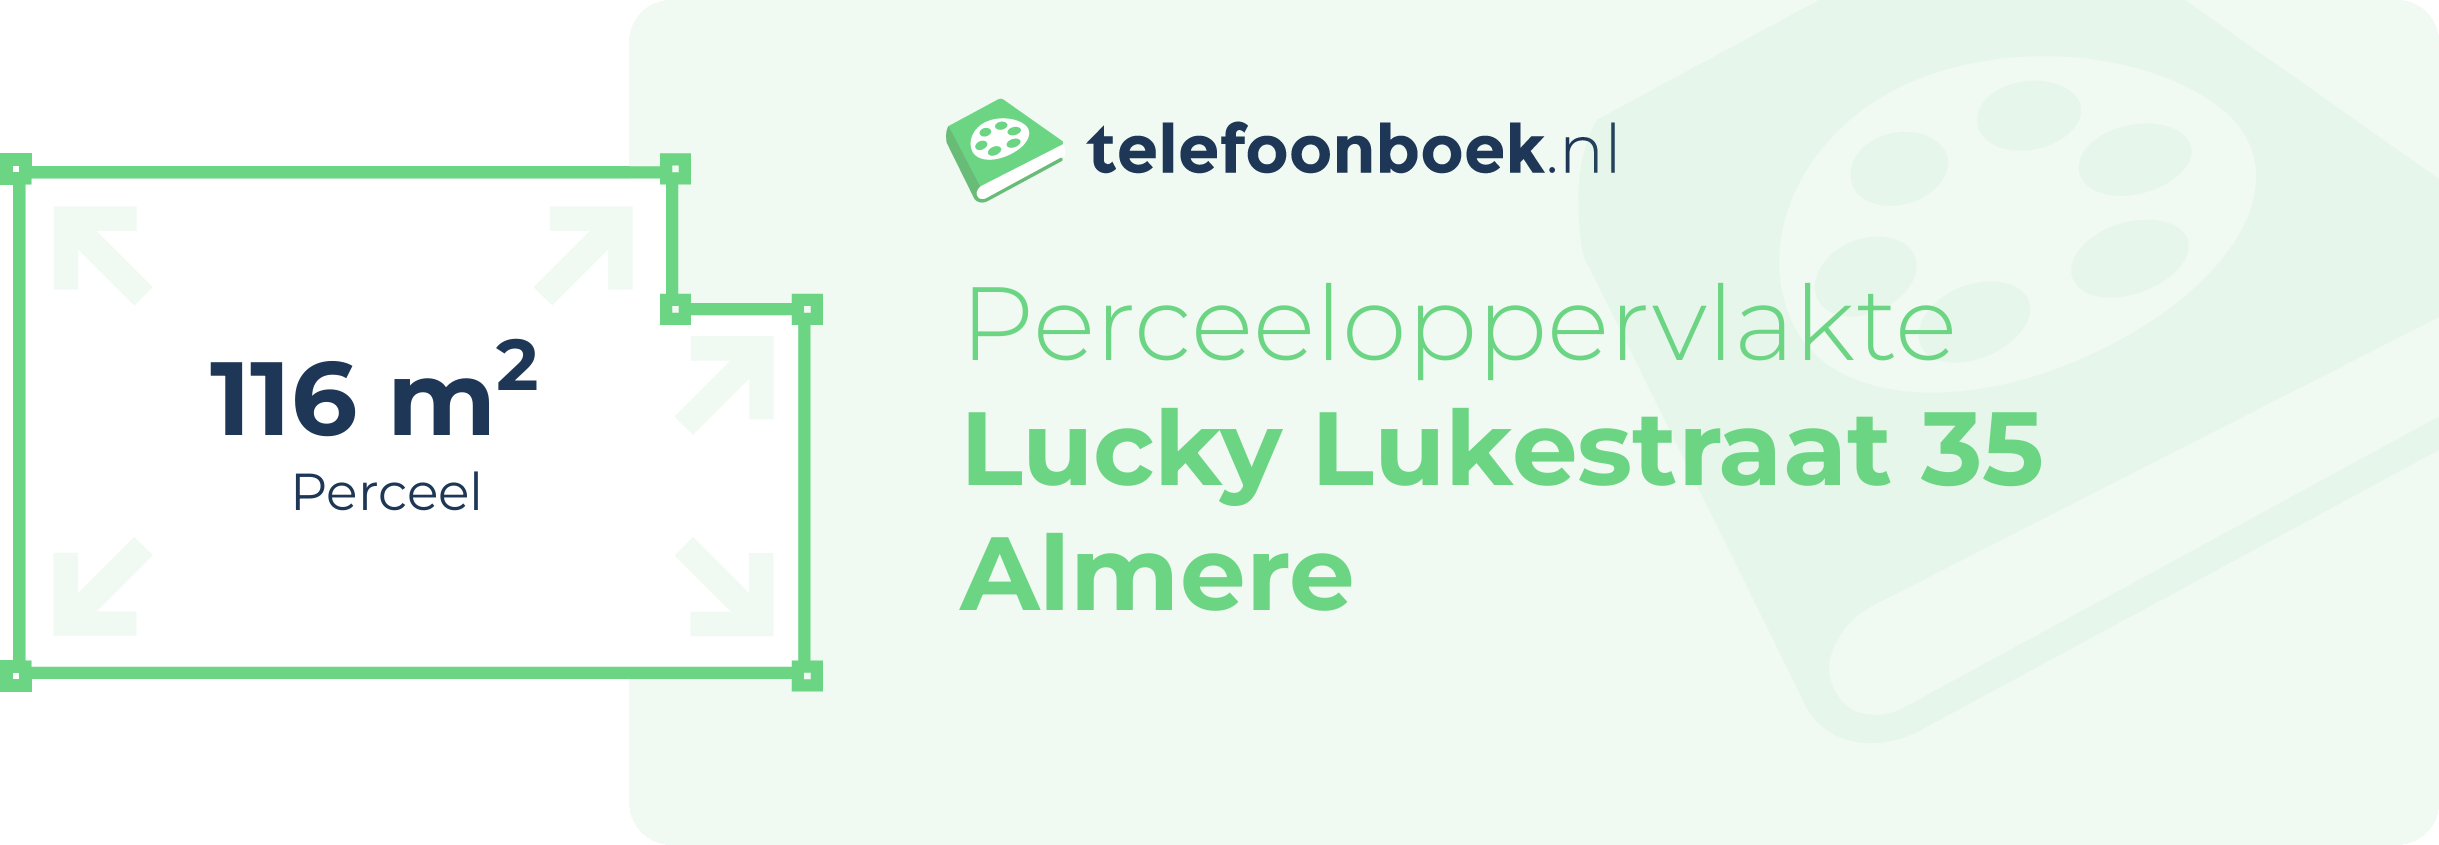 Perceeloppervlakte Lucky Lukestraat 35 Almere